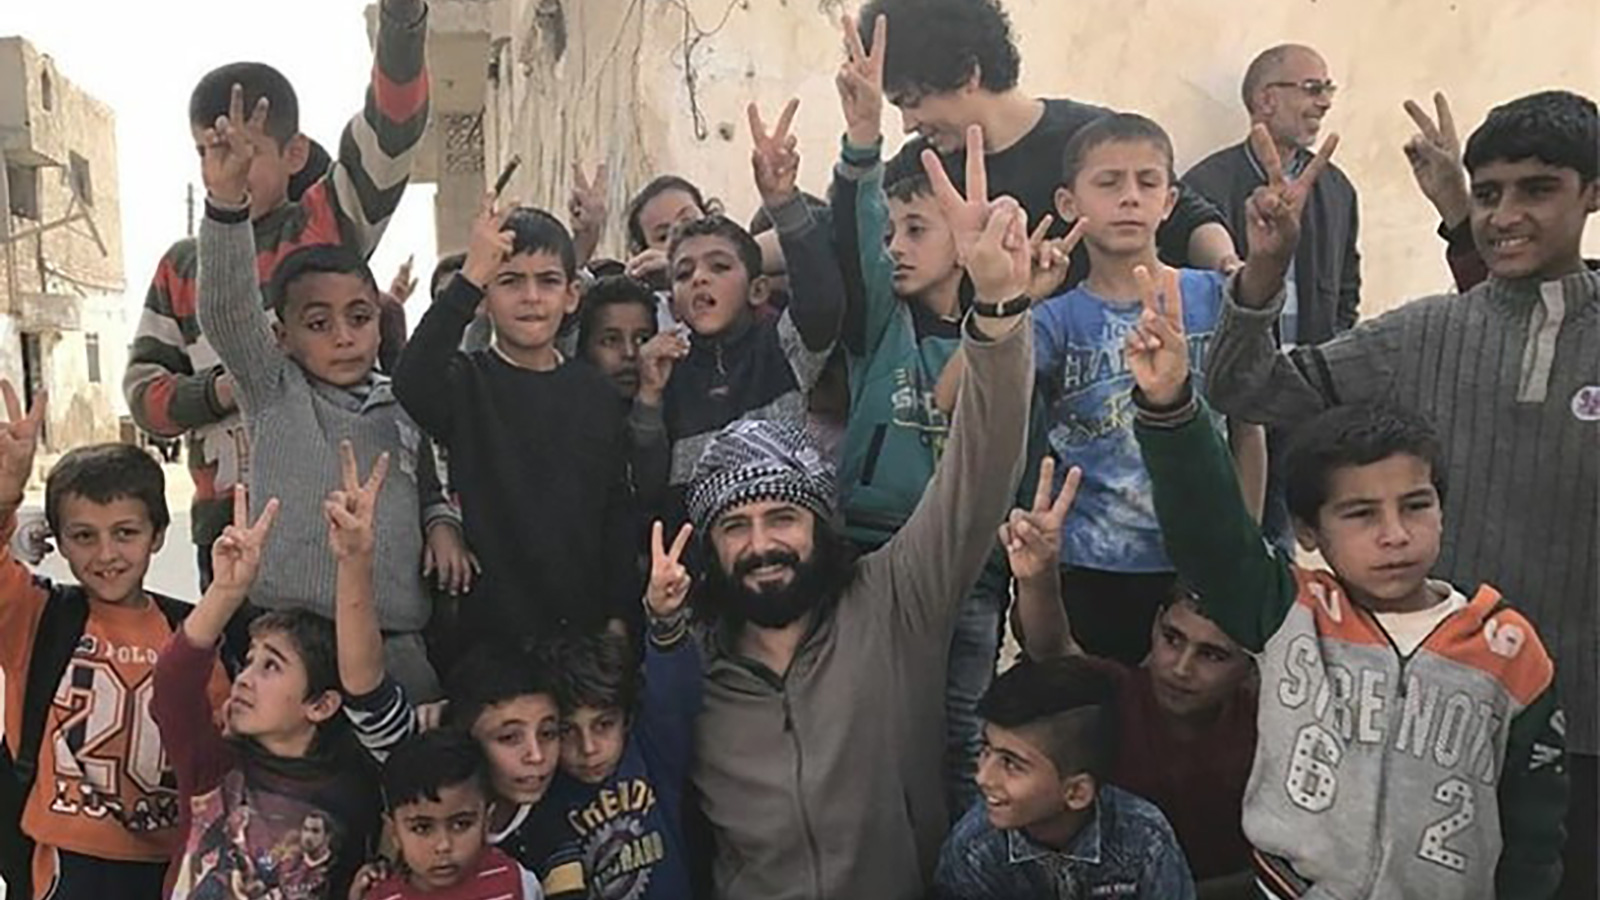 ‪النجم التركي جيم أوتشان يتوسط مجموعة من الأطفال السوريين خلال تصوير الفيلم‬ النجم التركي جيم أوتشان يتوسط مجموعة من الأطفال السوريين خلال تصوير الفيلم (الجزيرة)